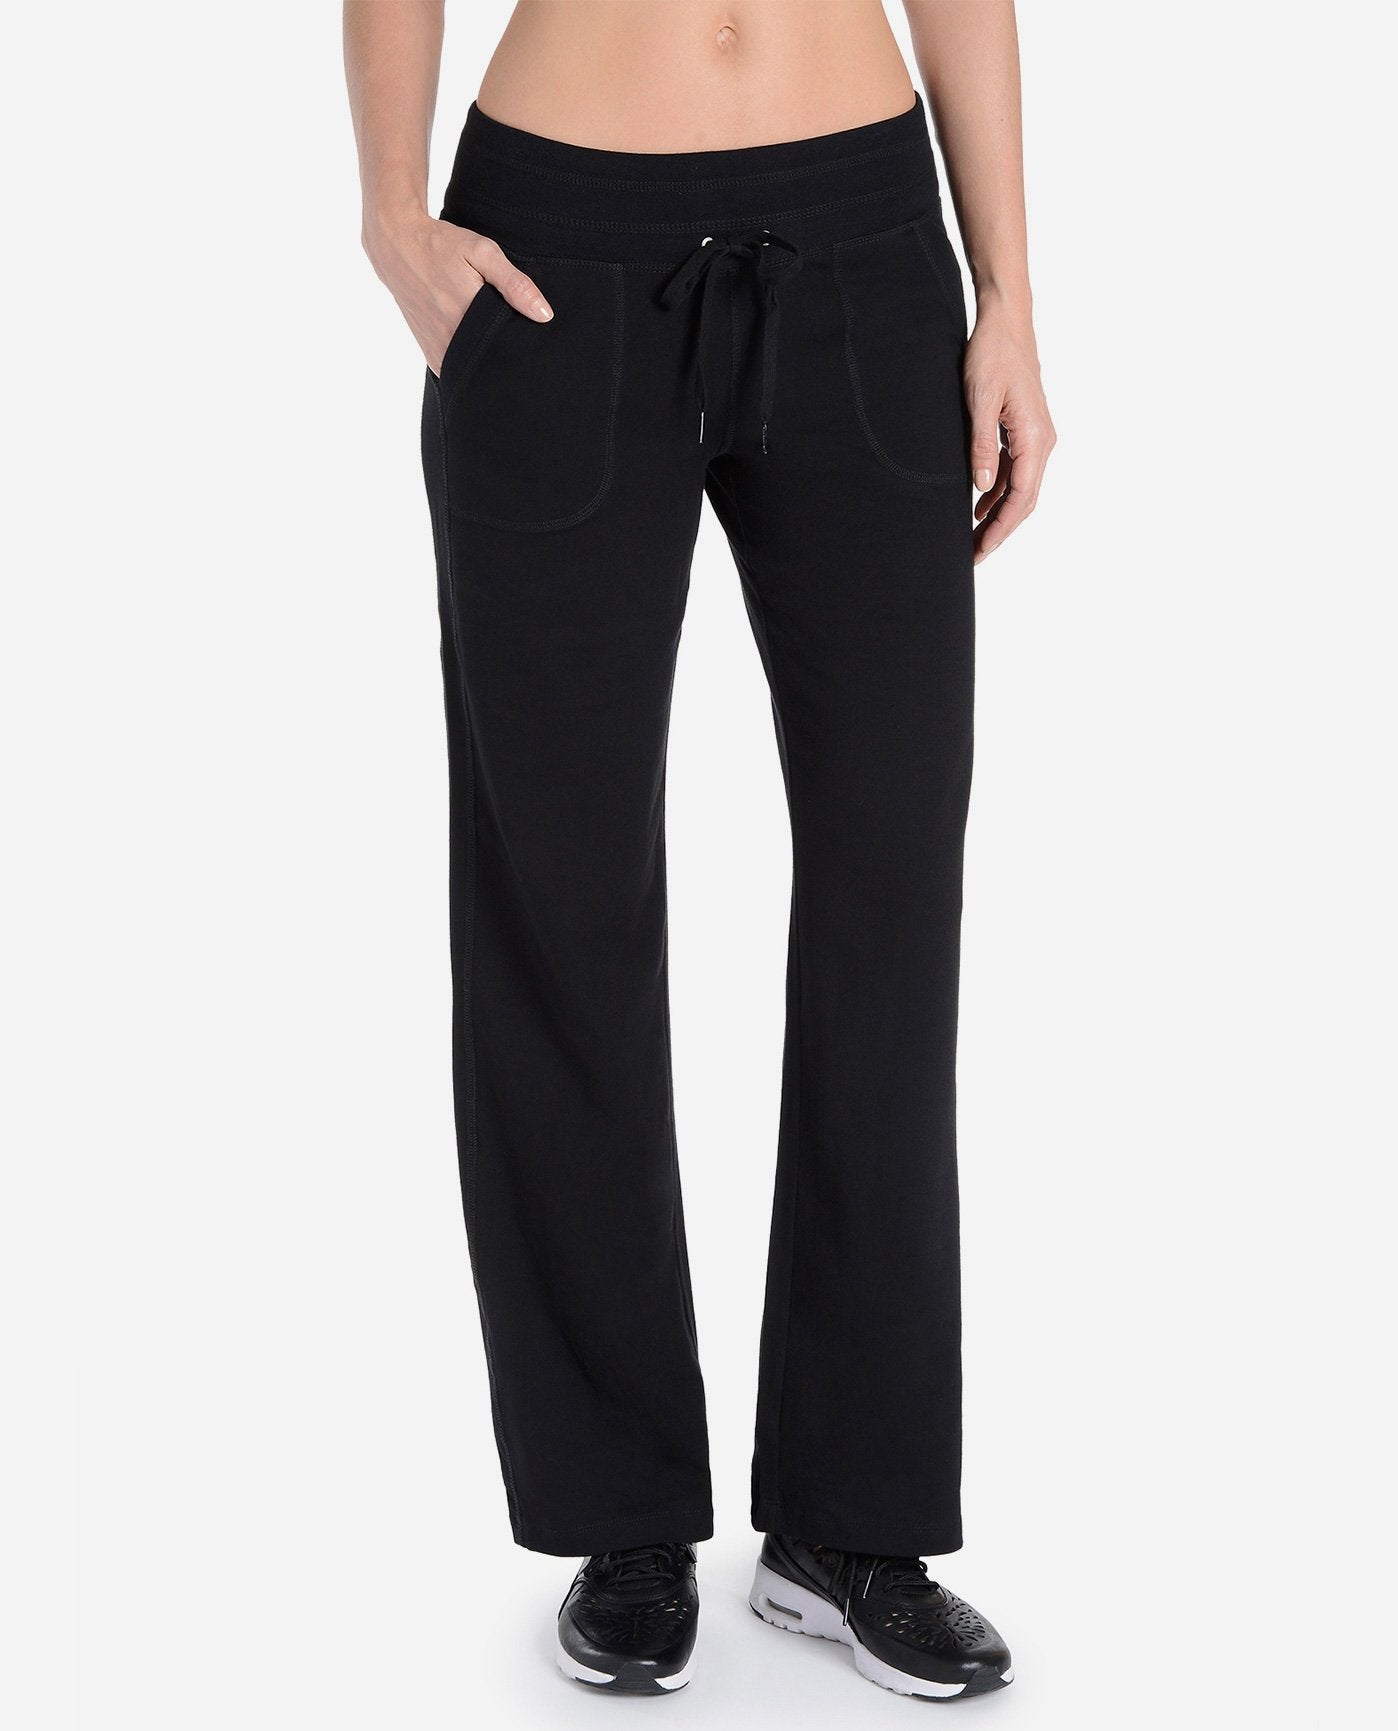 Danskin Women's Plus SizeDanskin Sleek Fit Yoga Pant, Charcoal, 1X